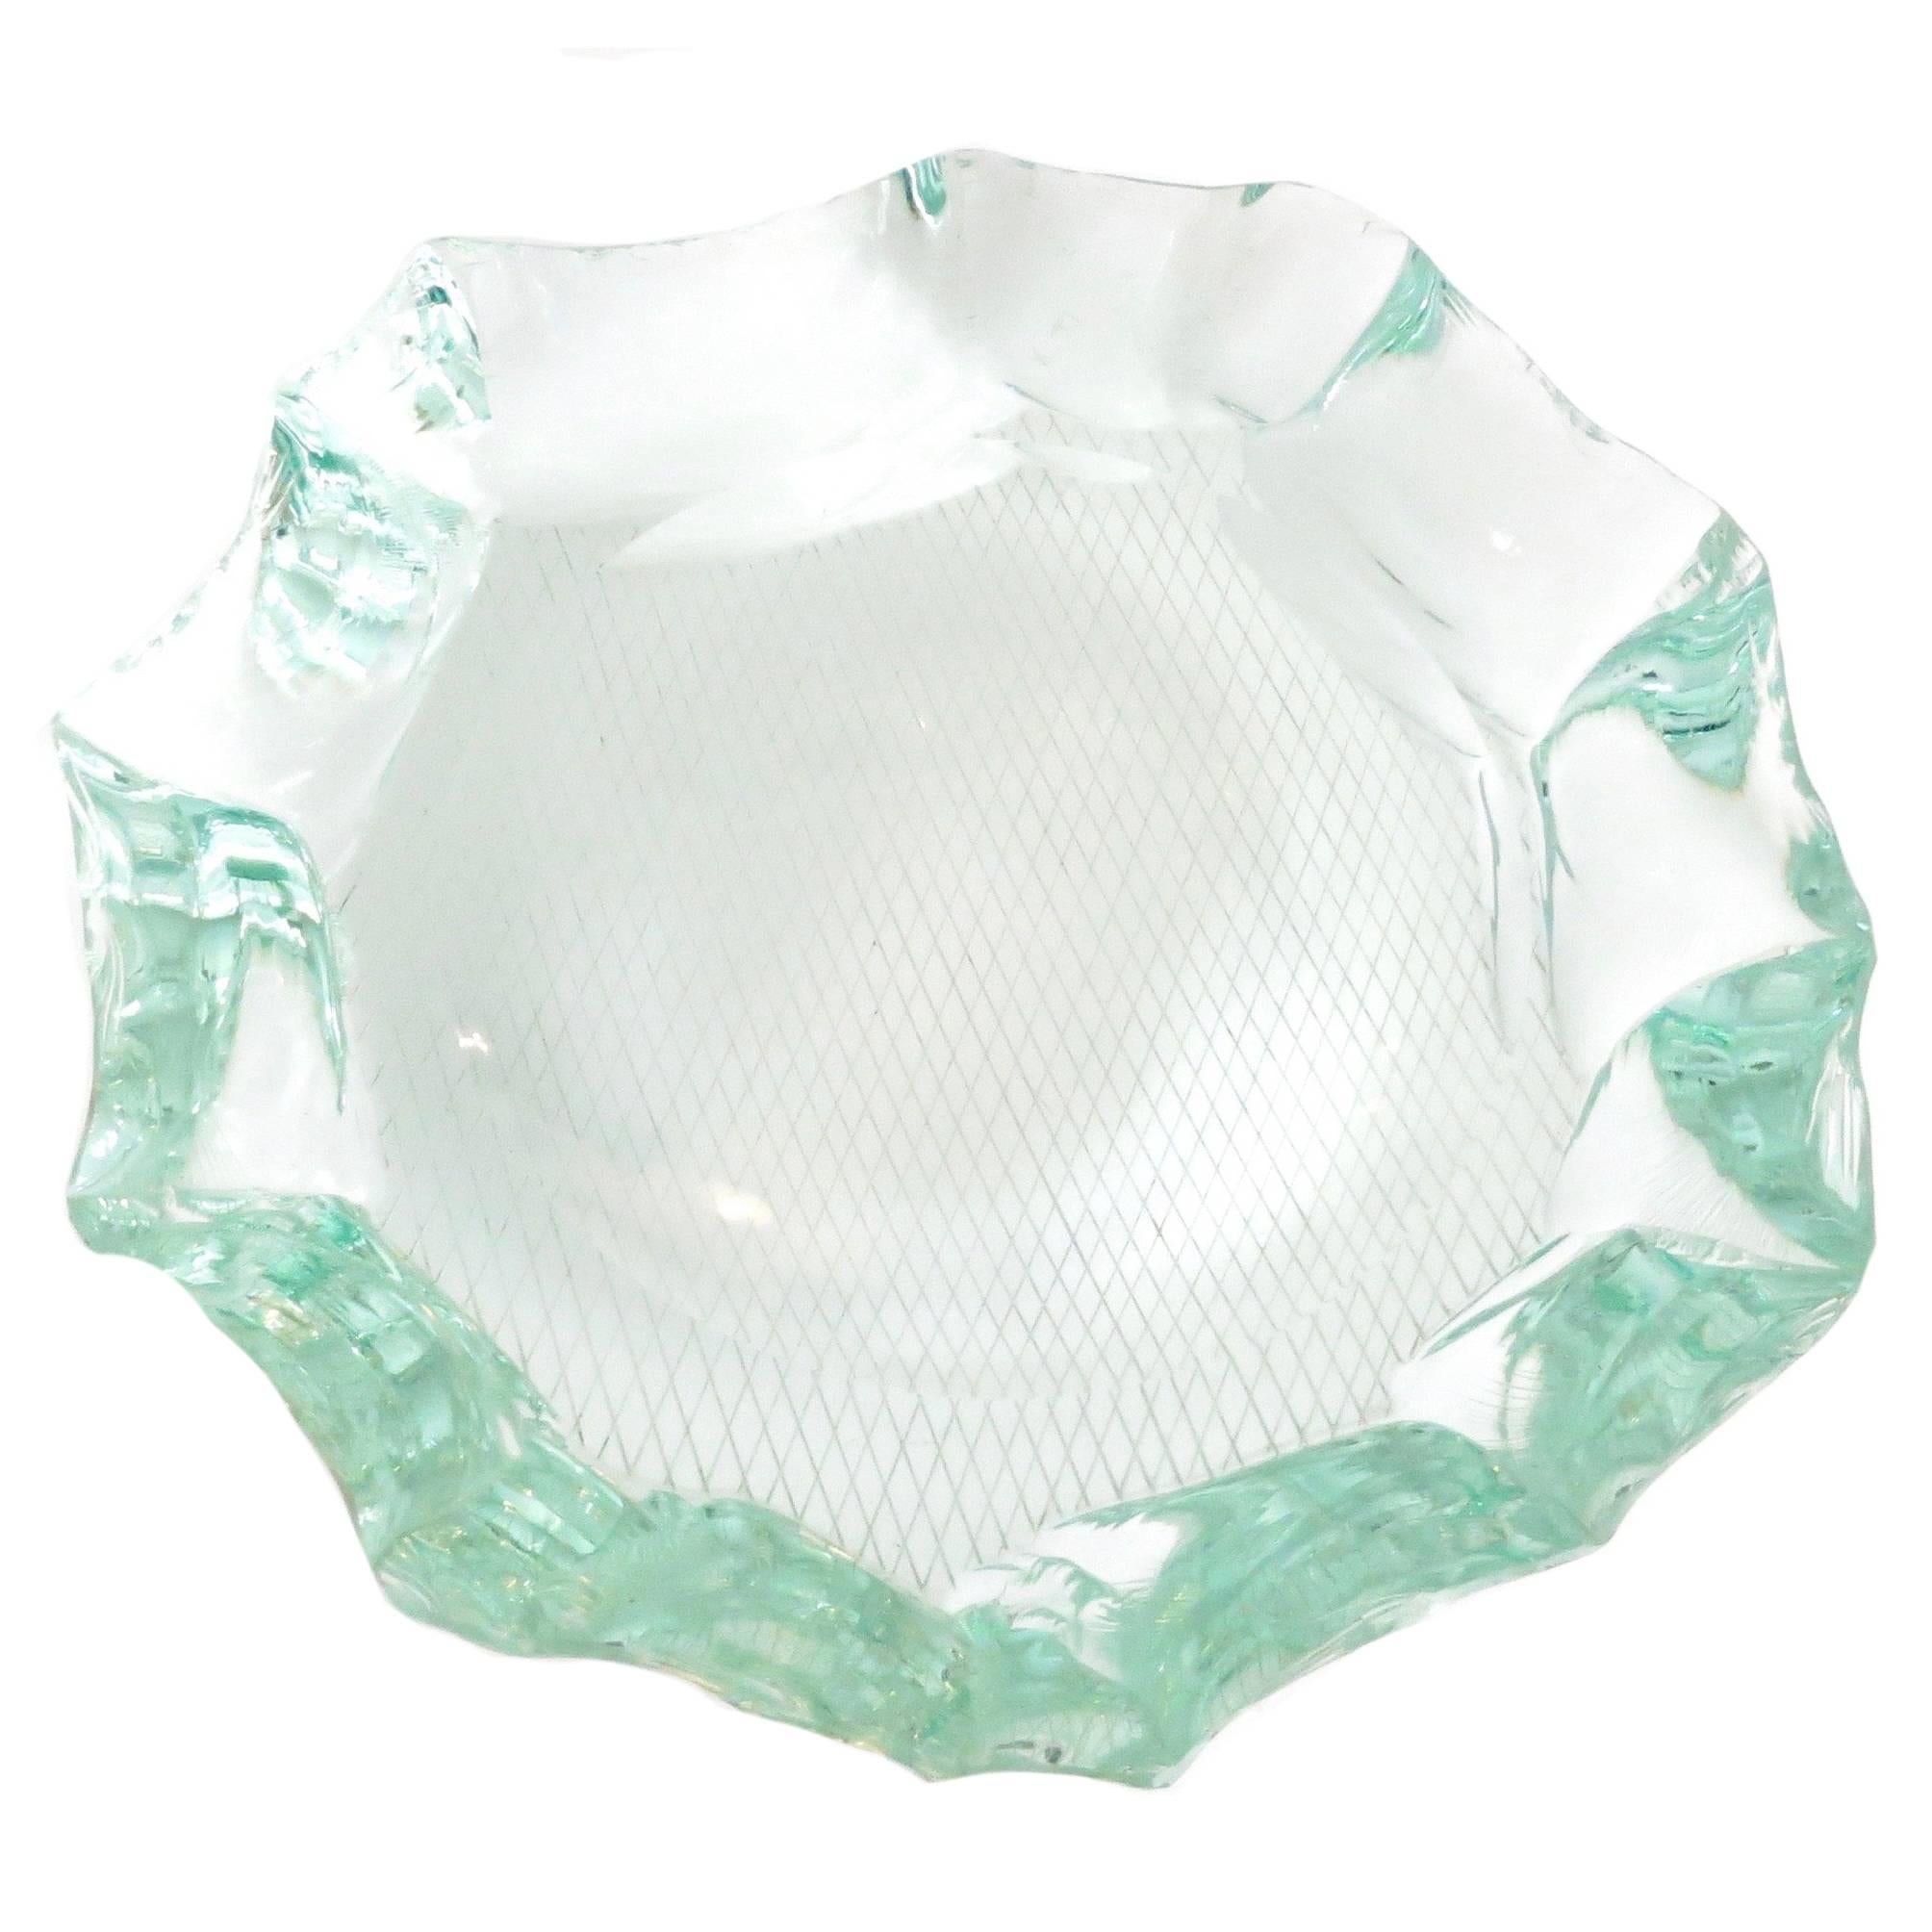 Scalpellato Italian Glass Dish or Vide Poche by Pietro Chiesa Fontana Arte